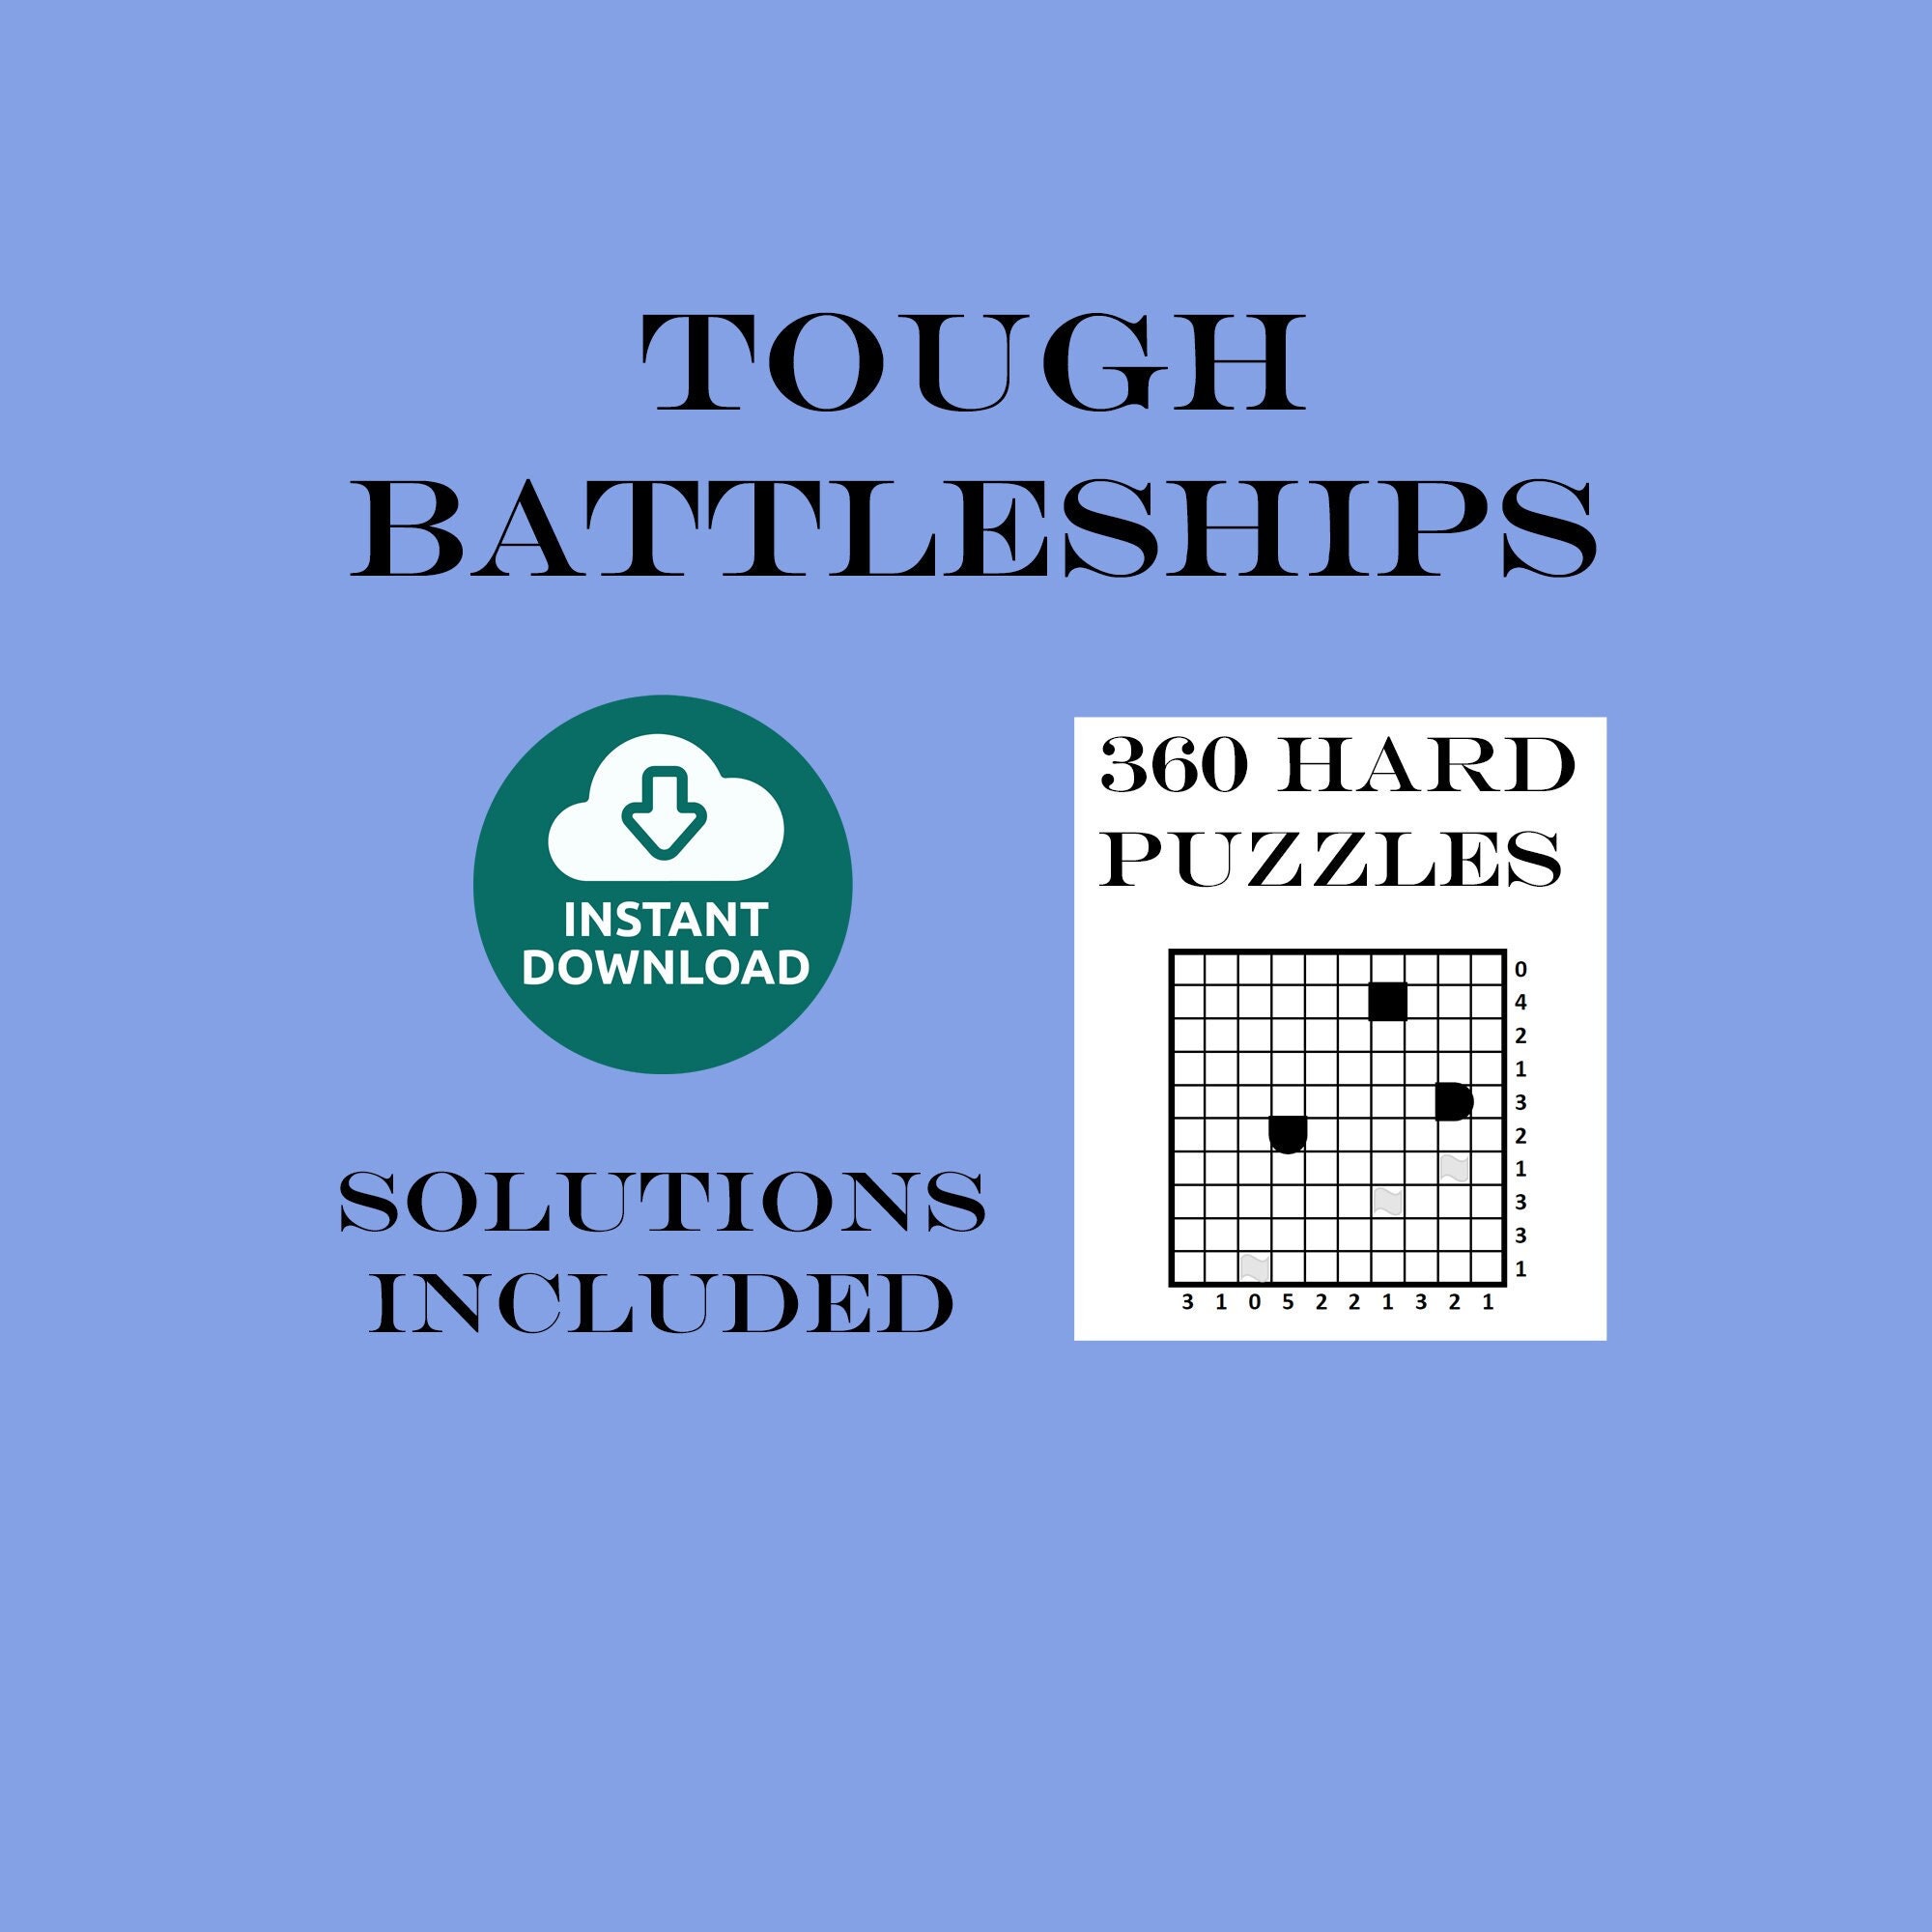 battleship puzzles 360 hard logic puzzles sea battle etsy ireland